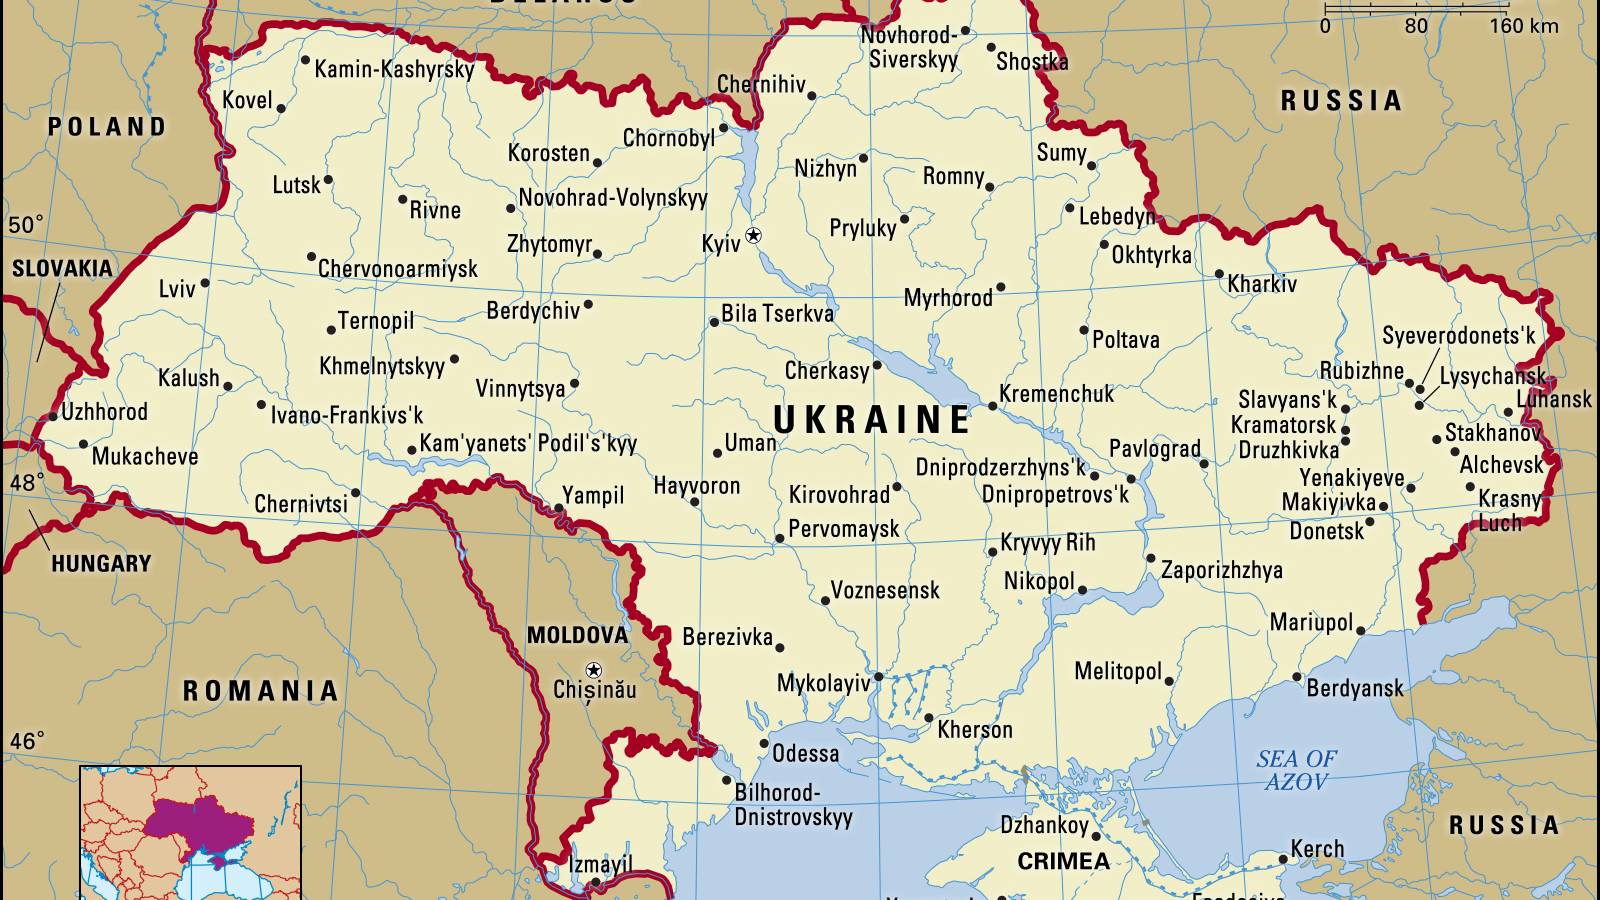 Mappa dei territori occupati dalla Russia in Ucraina - 6 marzo 2022